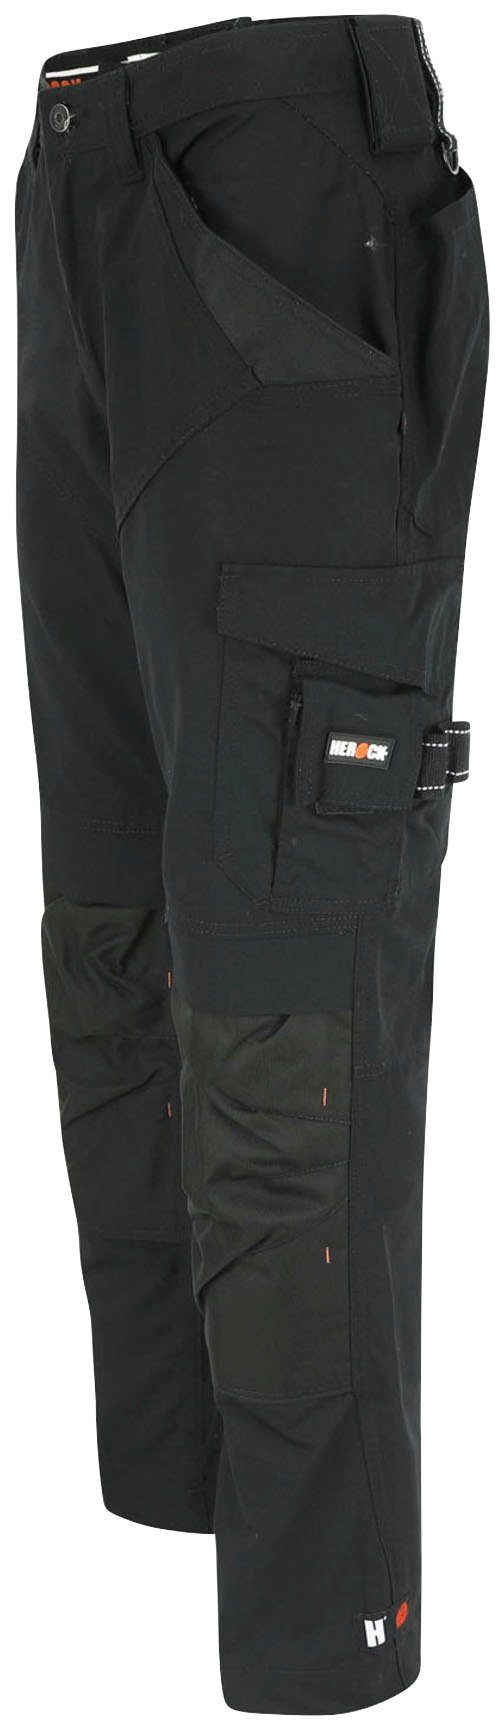 - & - schwarz 8 Bund - bequem Wasserabweisend Regelbarer Hose Apollo Herock leicht Arbeitshose Taschen